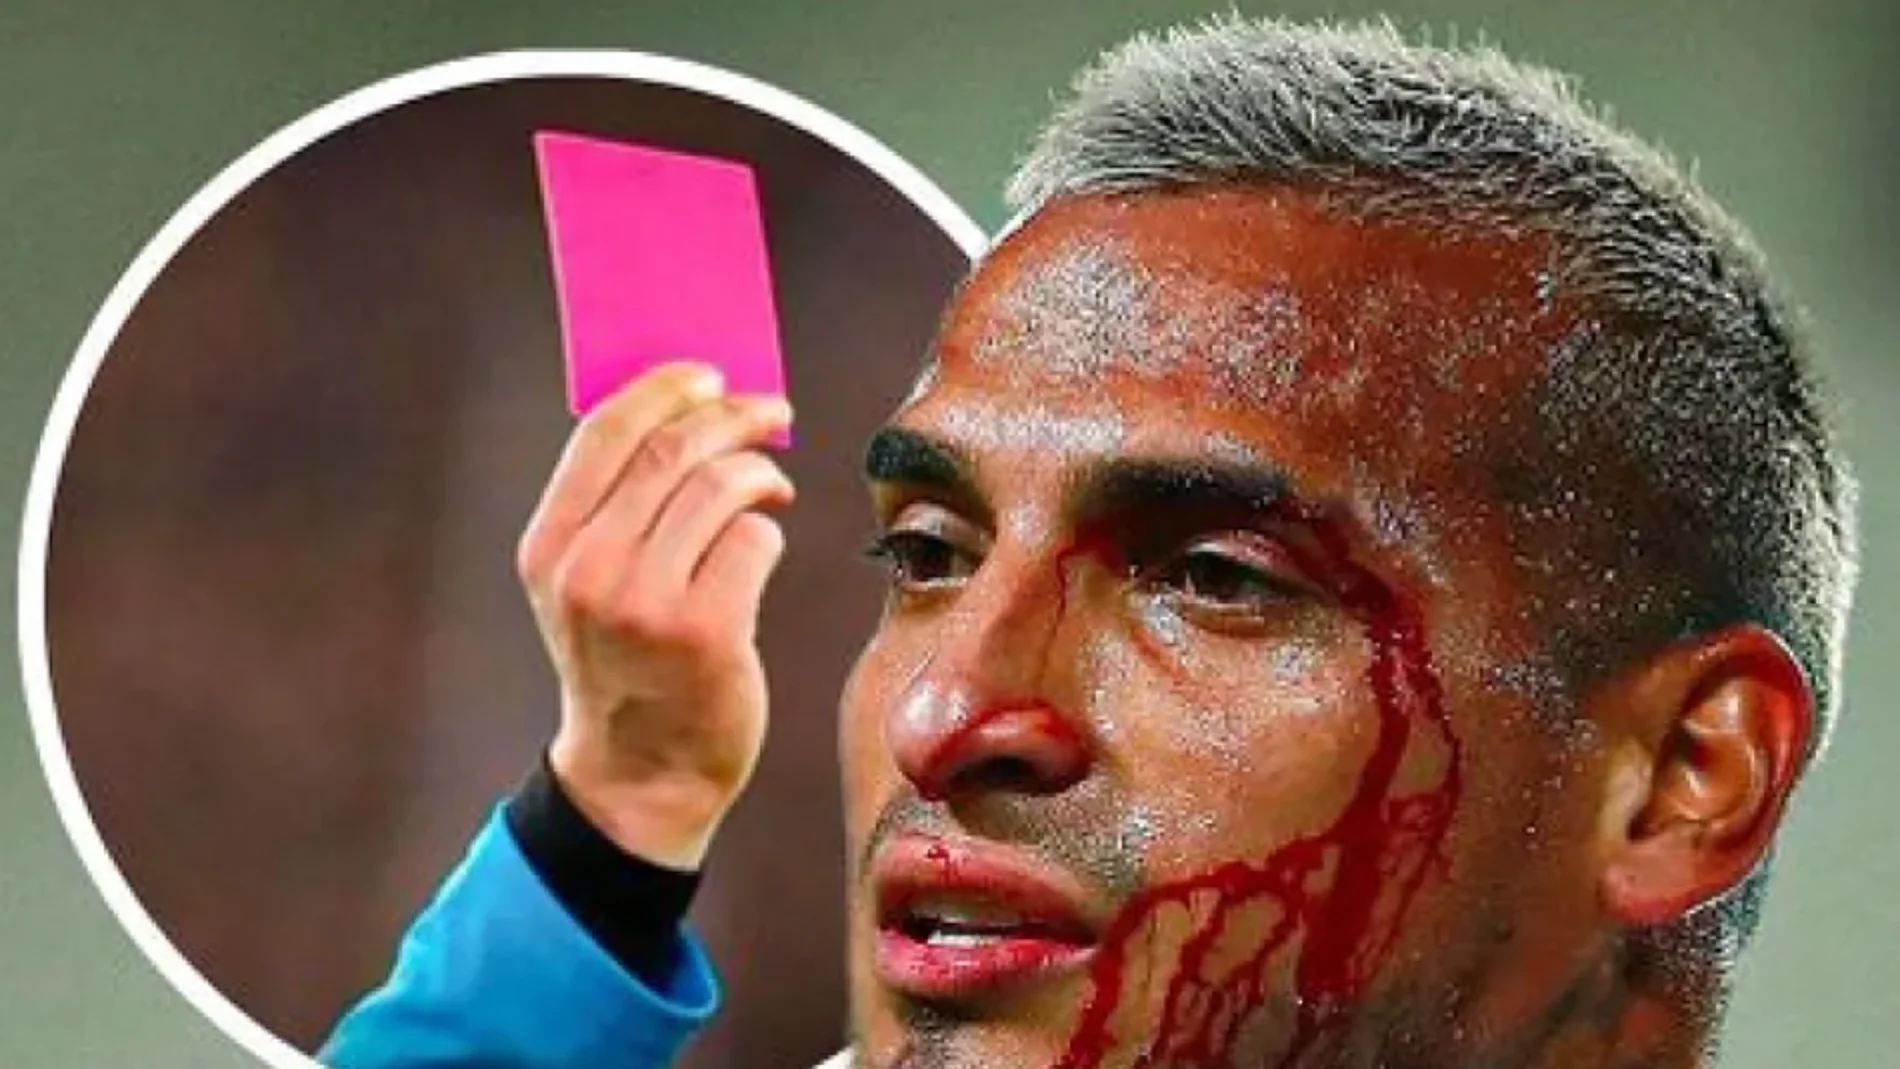 La tarjeta rosa se estrenará en la Copa América: ¿Para qué sirve?